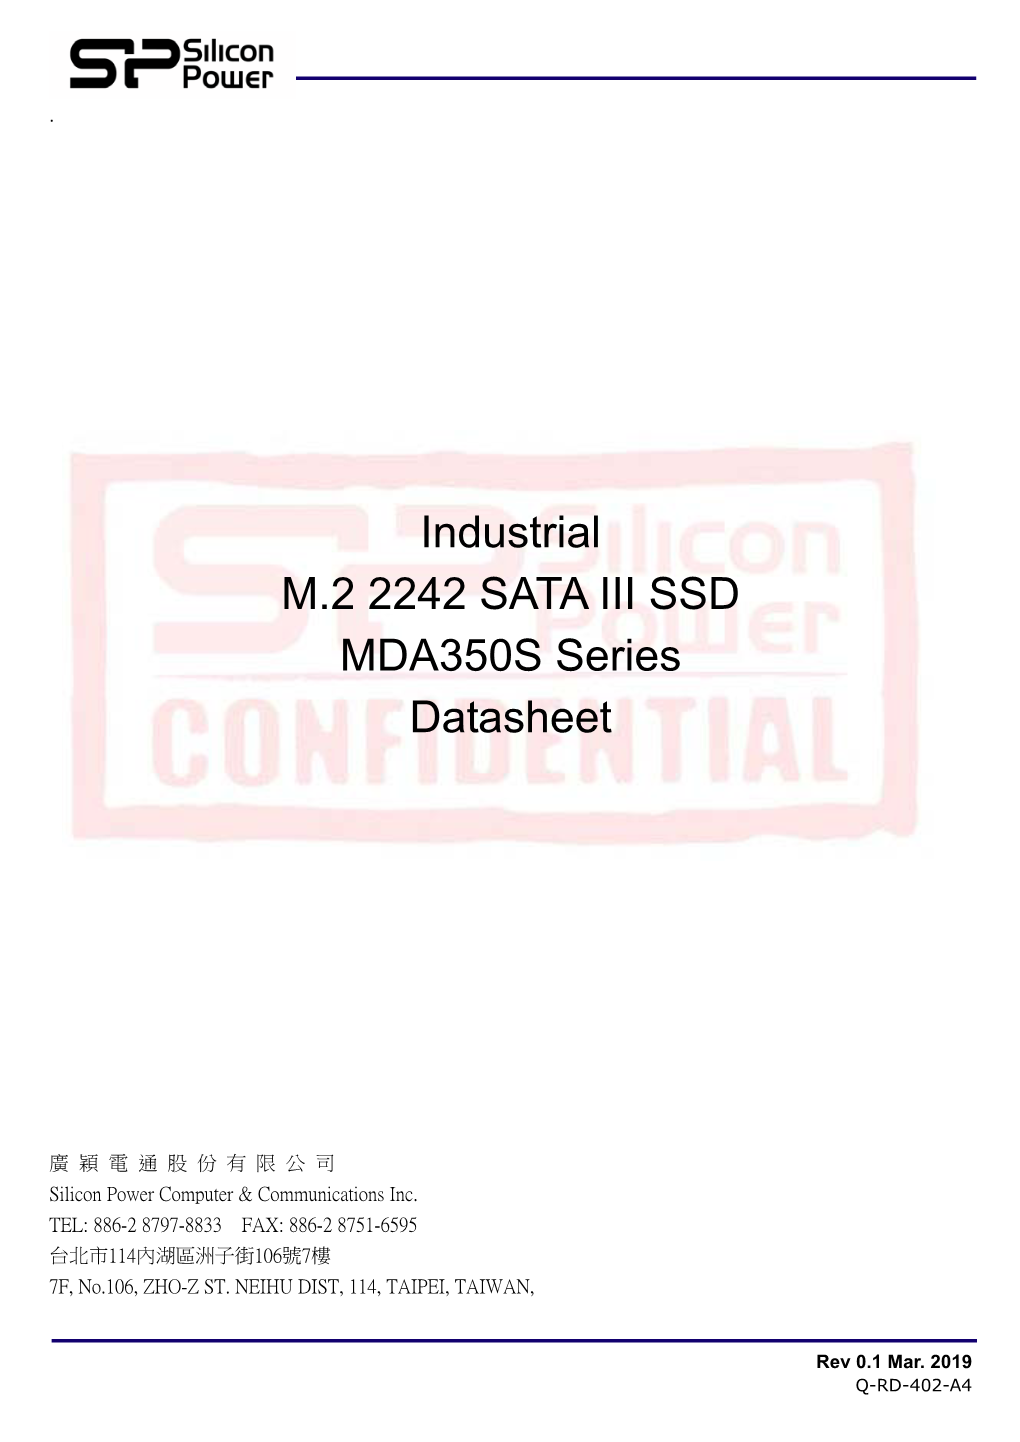 Industrial M.2 2242 SATA III SSD MDA350S Series Datasheet